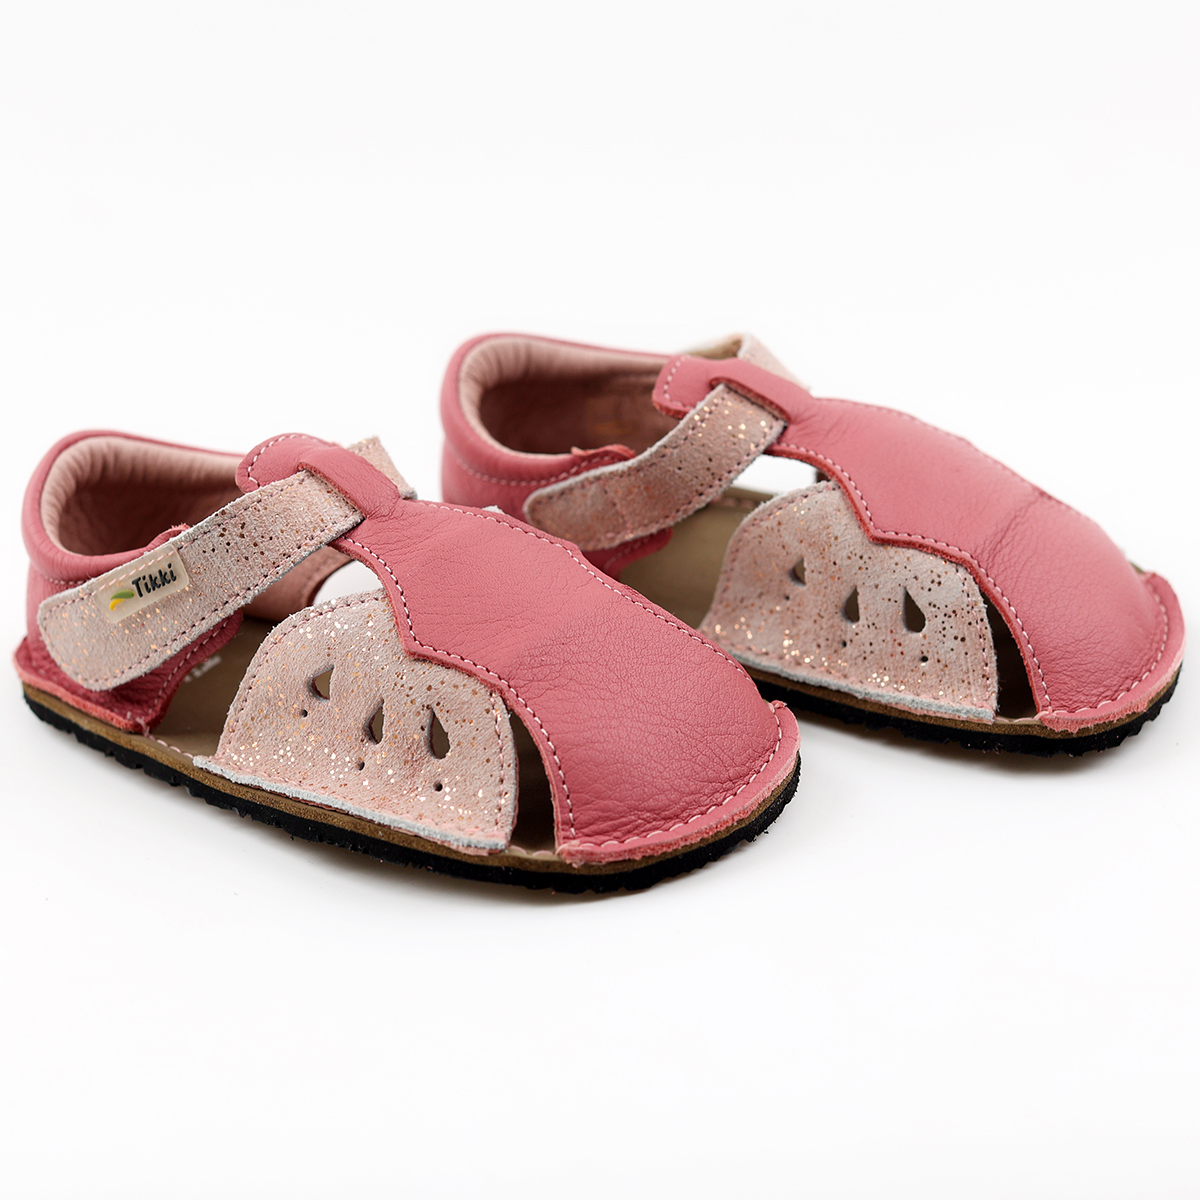 Tikki Mariposa Leather sandaalid, Lollipop Laste barefoot jalatsid - HellyK - Kvaliteetsed lasteriided, villariided, barefoot jalatsid